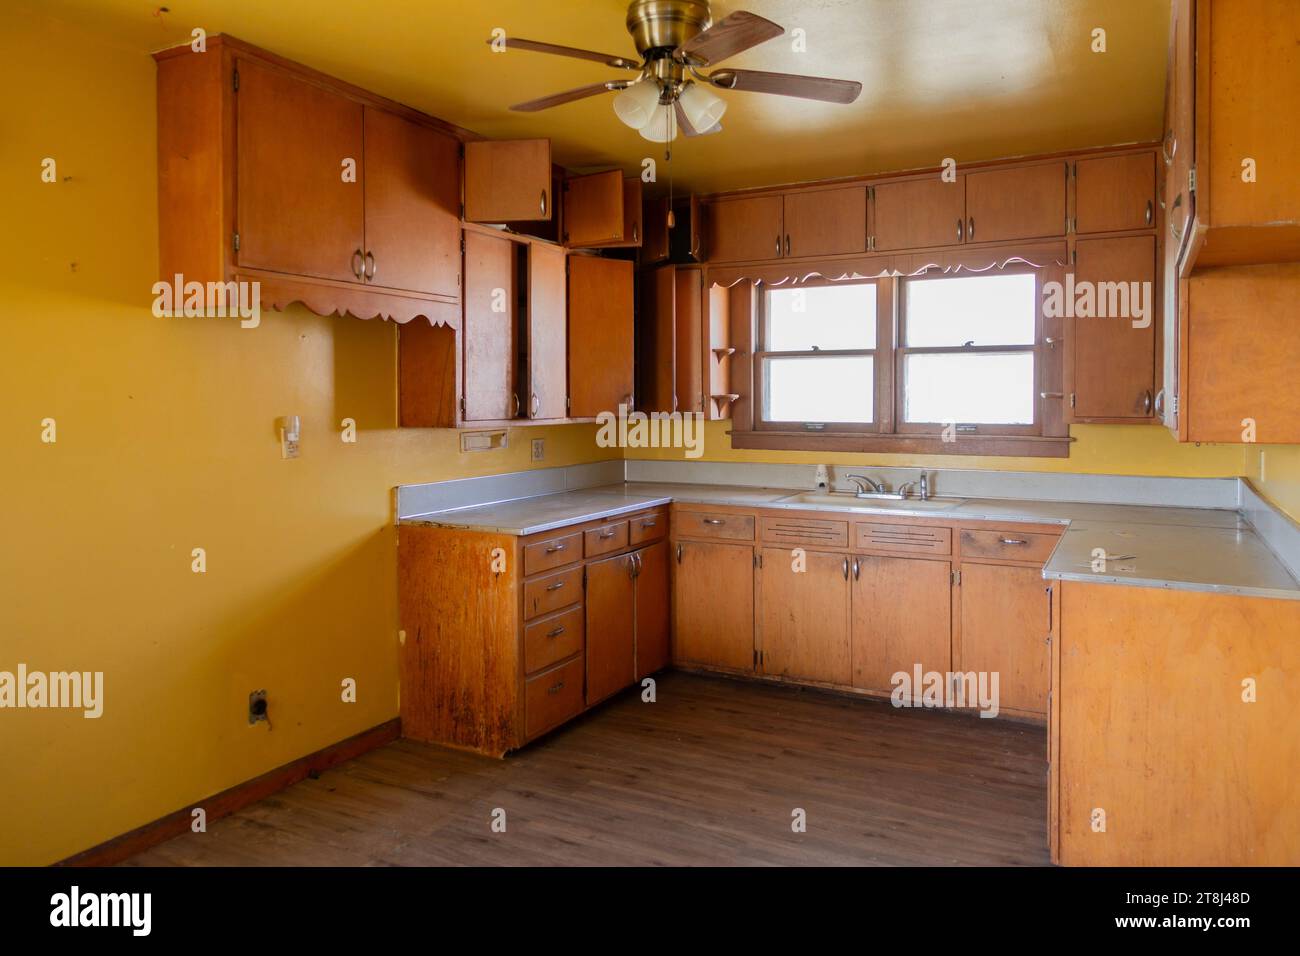 Cucina malandata e fuori stile che necessita di una ristrutturazione in una vecchia casa colonica in vendita nel Kansas occidentale, Stati Uniti. Foto Stock